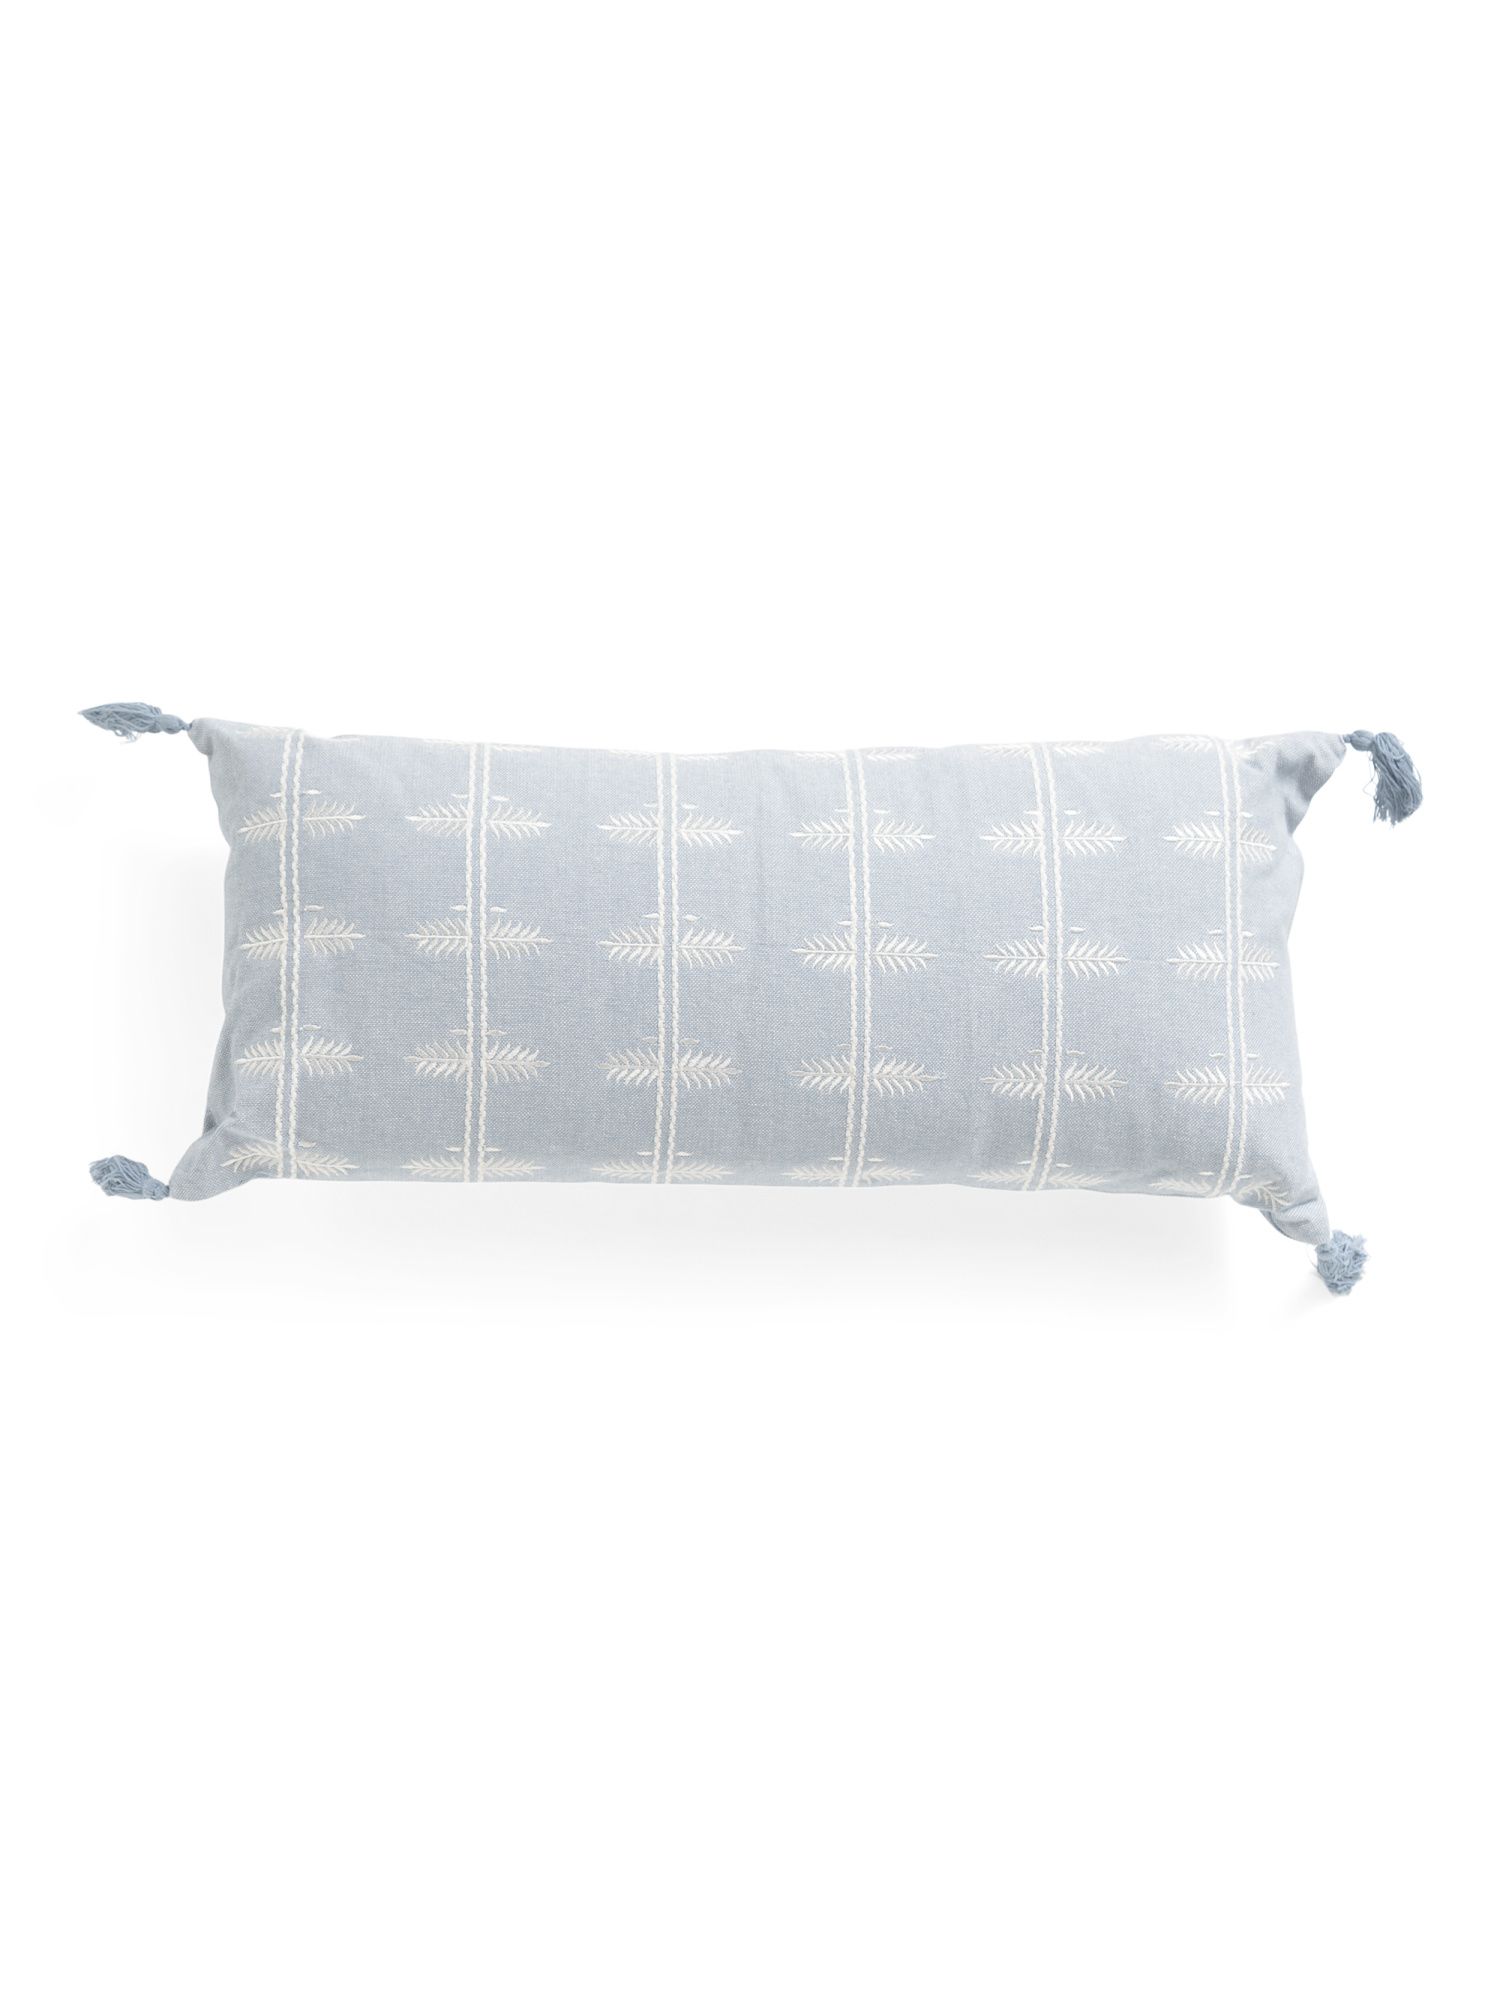 12x26 Abstract Print Pillow With Tassels | TJ Maxx